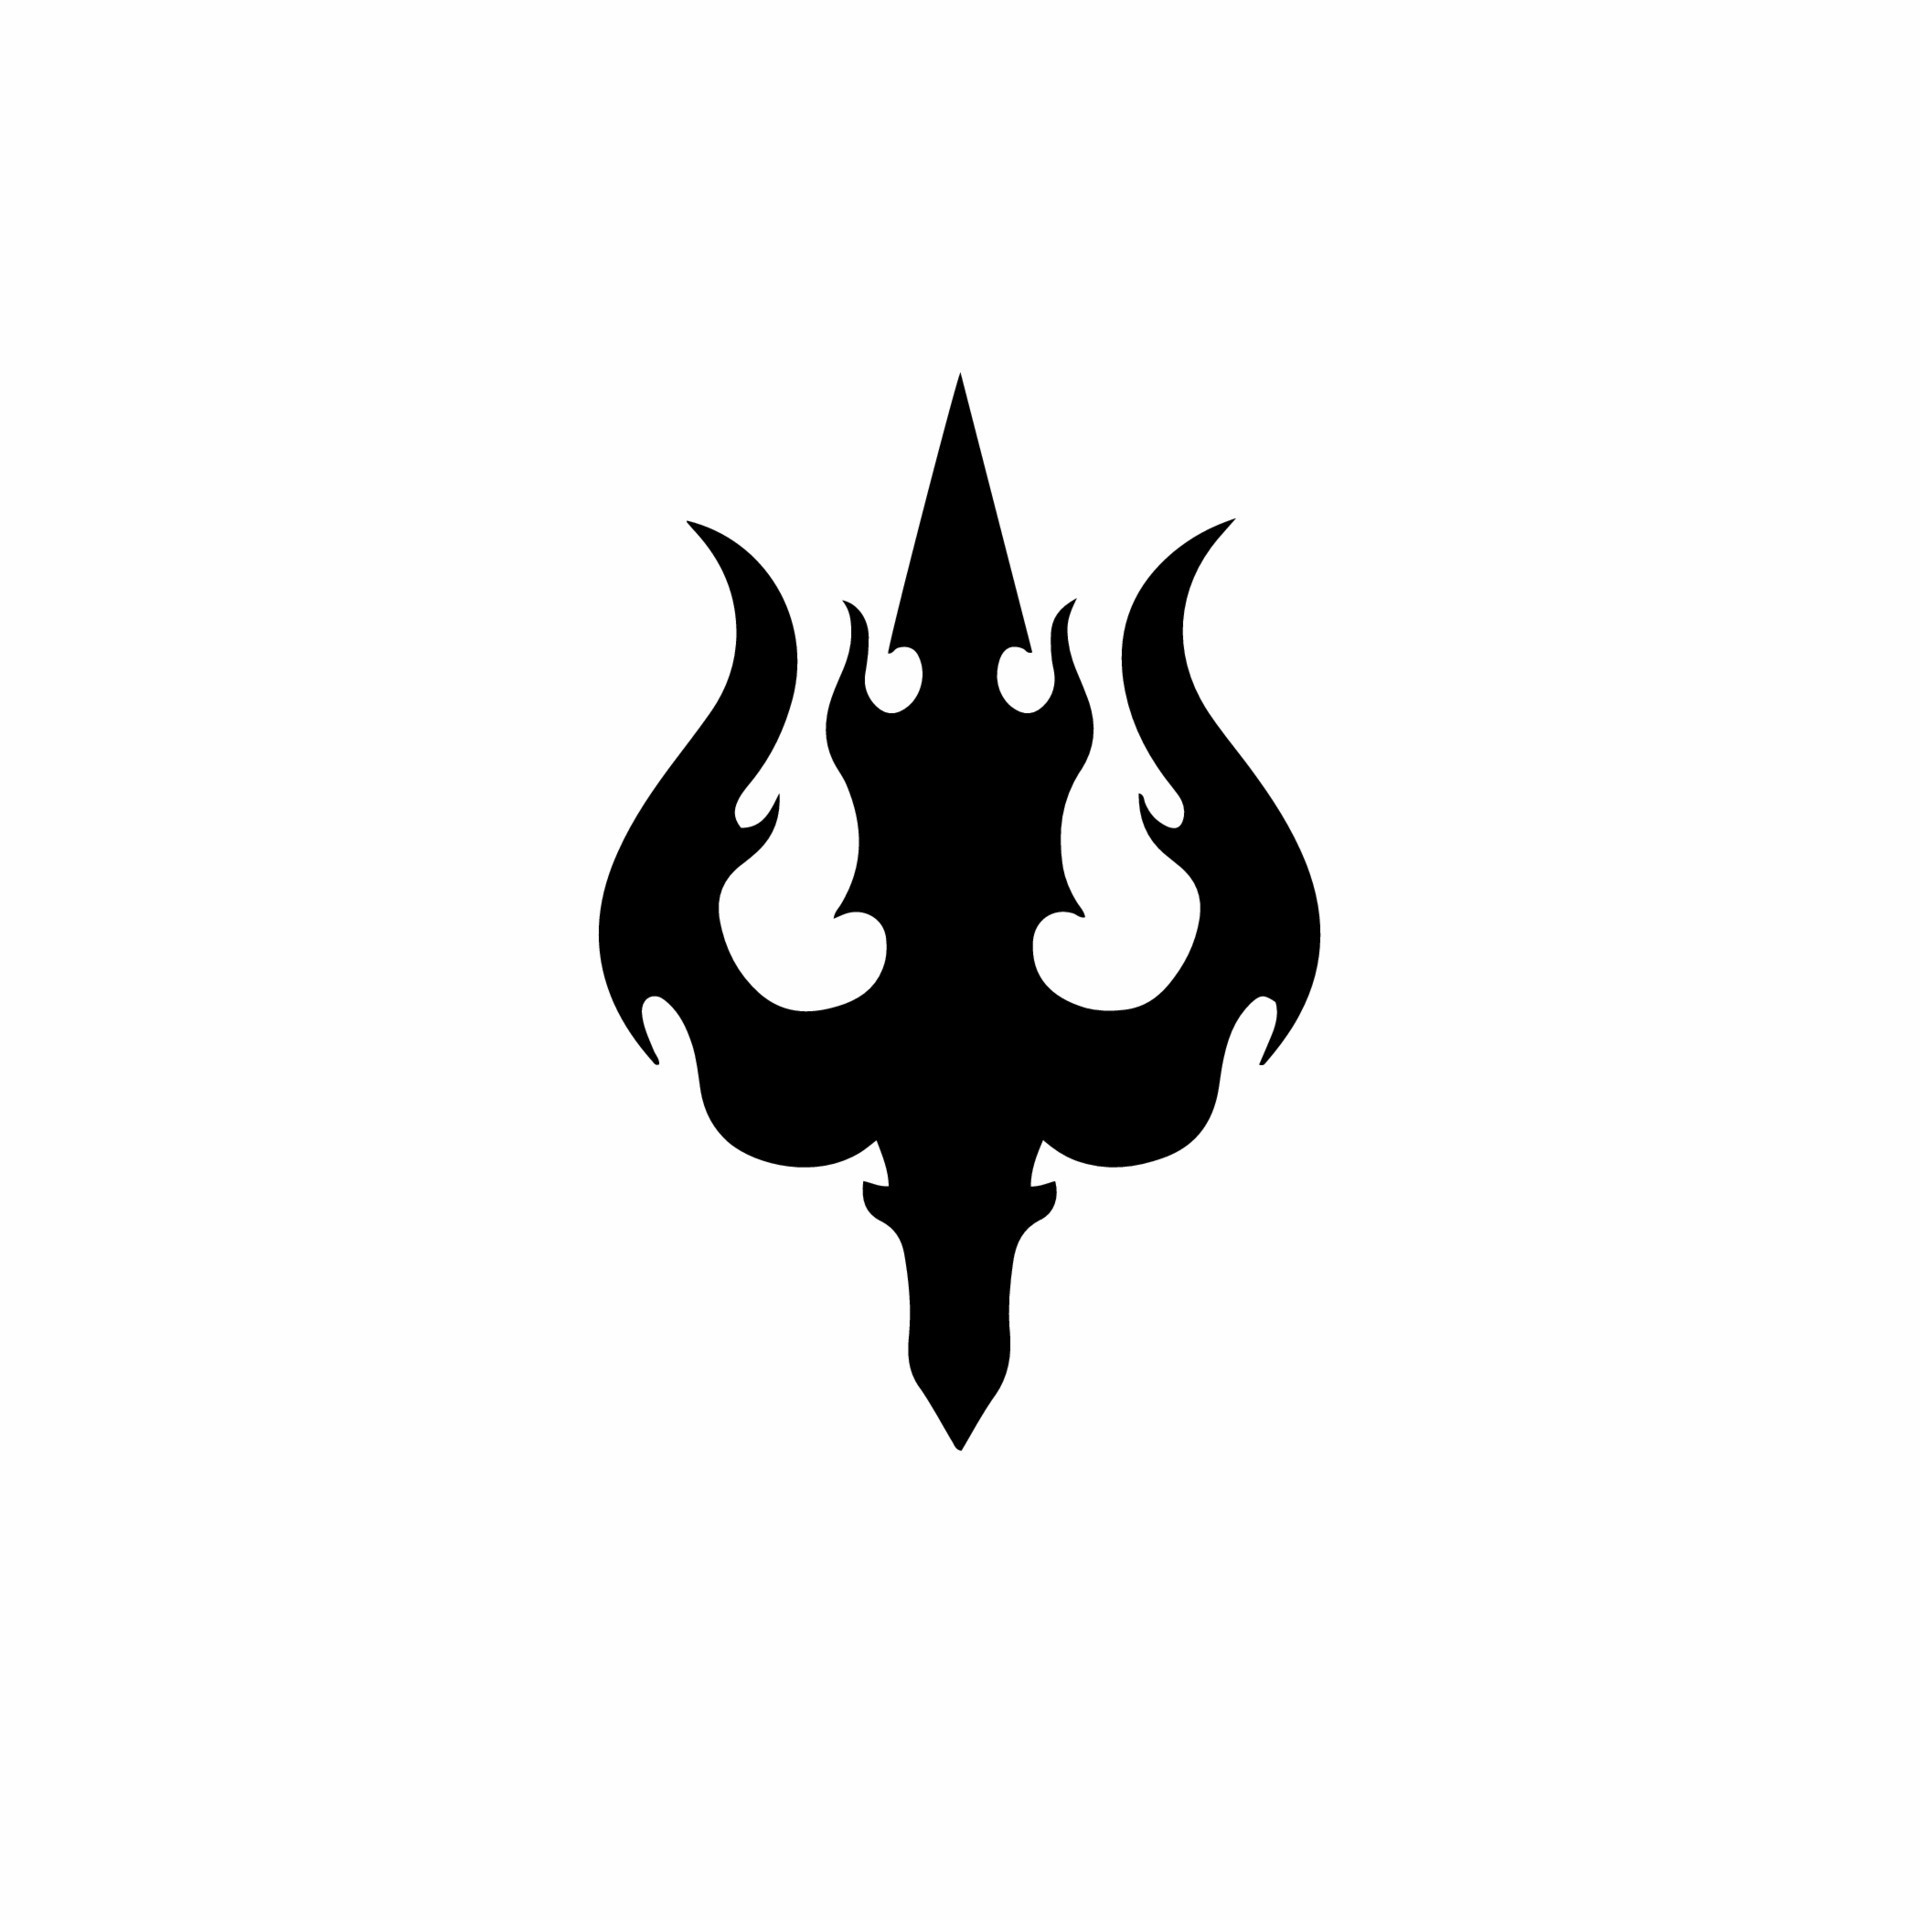 Trident Symbol Logo. Tribal Tattoo Design. Stencil Vector Illustration  16189193 Vector Art at Vecteezy